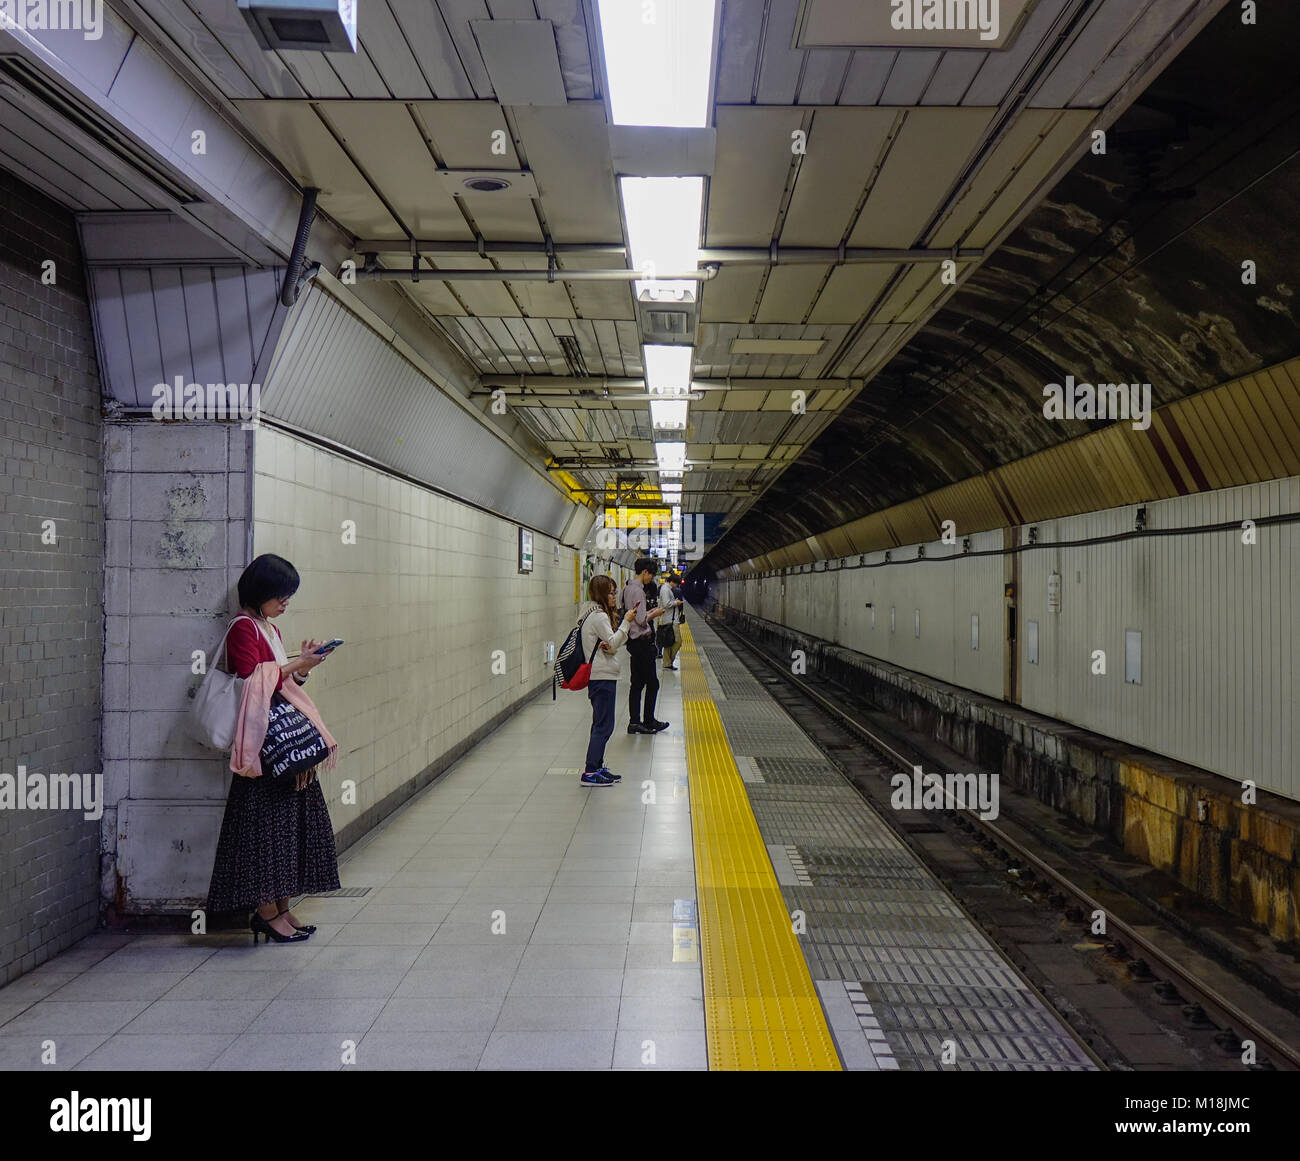 Tokyo, Giappone - 29 set 2017. La gente in attesa presso la piattaforma della stazione ferroviaria a Tokyo in Giappone. Il trasporto ferroviario in Giappone è uno dei principali mezzi di tr passeggero Foto Stock